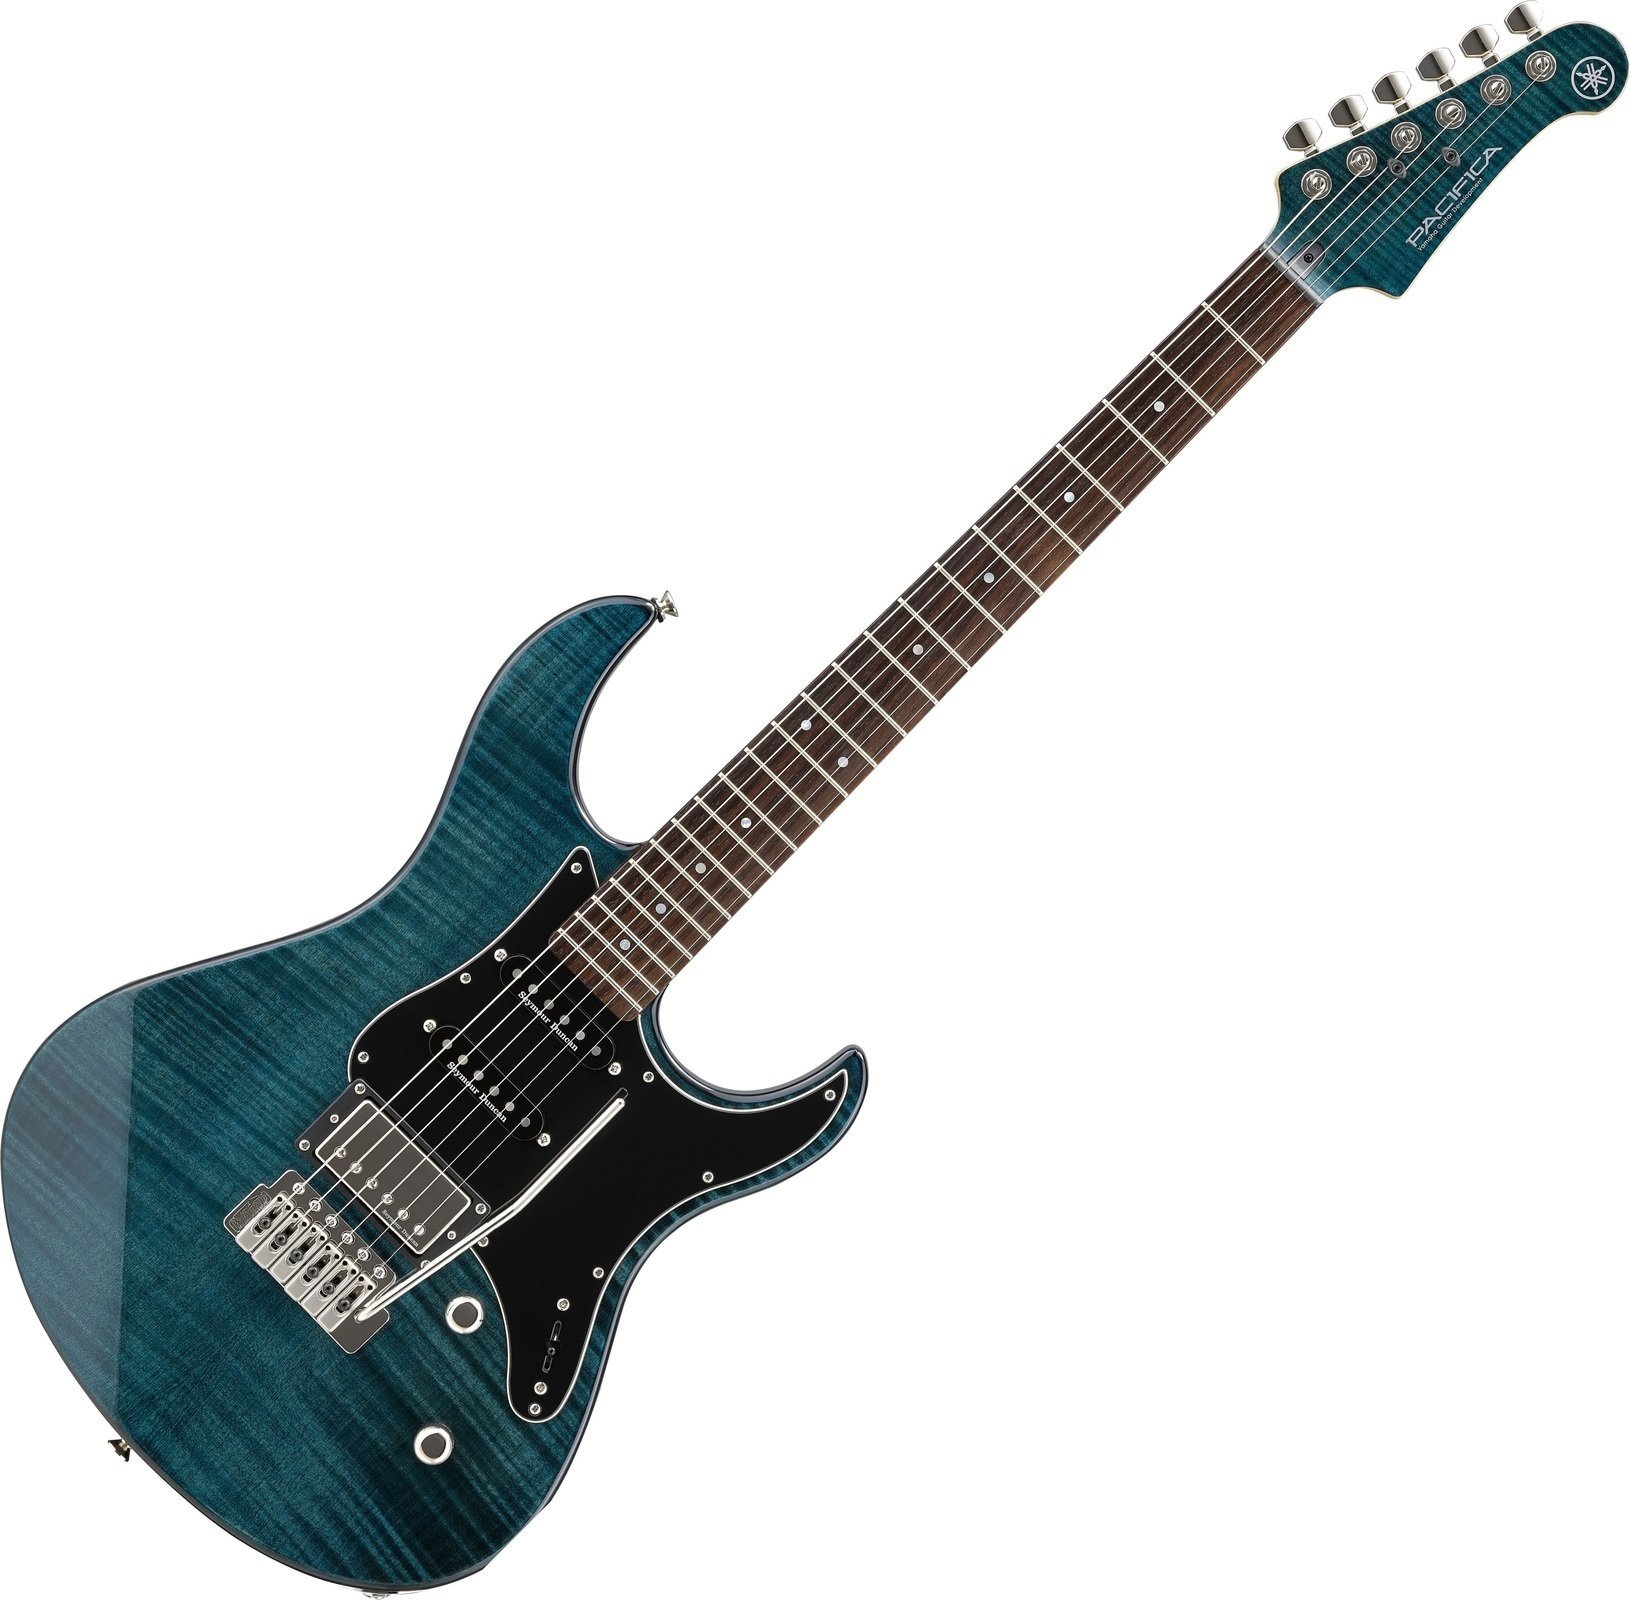 Electric guitar Yamaha Pacifica 612V Indigo Blue